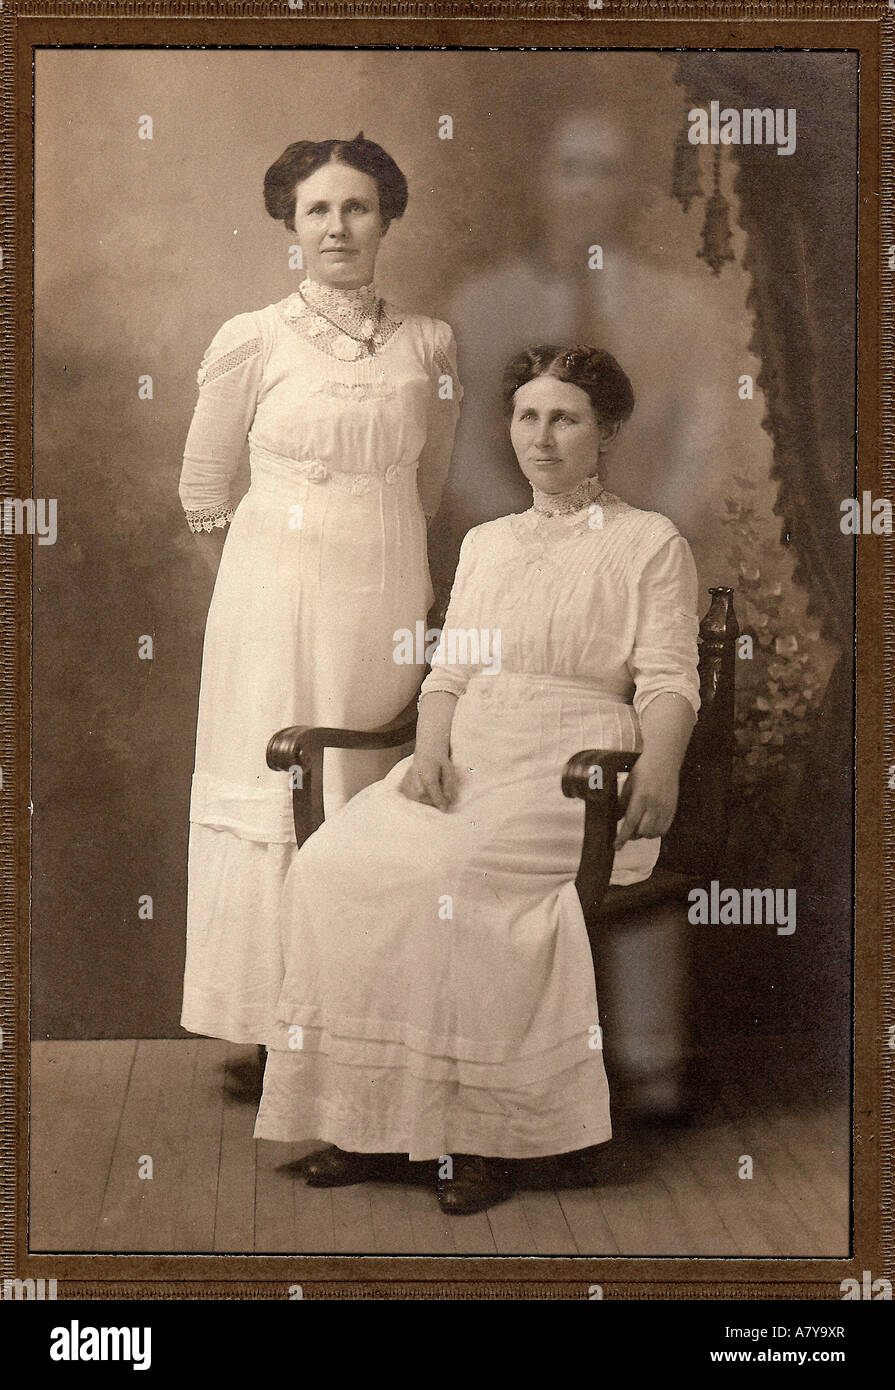 Apparition dans Ghost photo vintage Banque D'Images